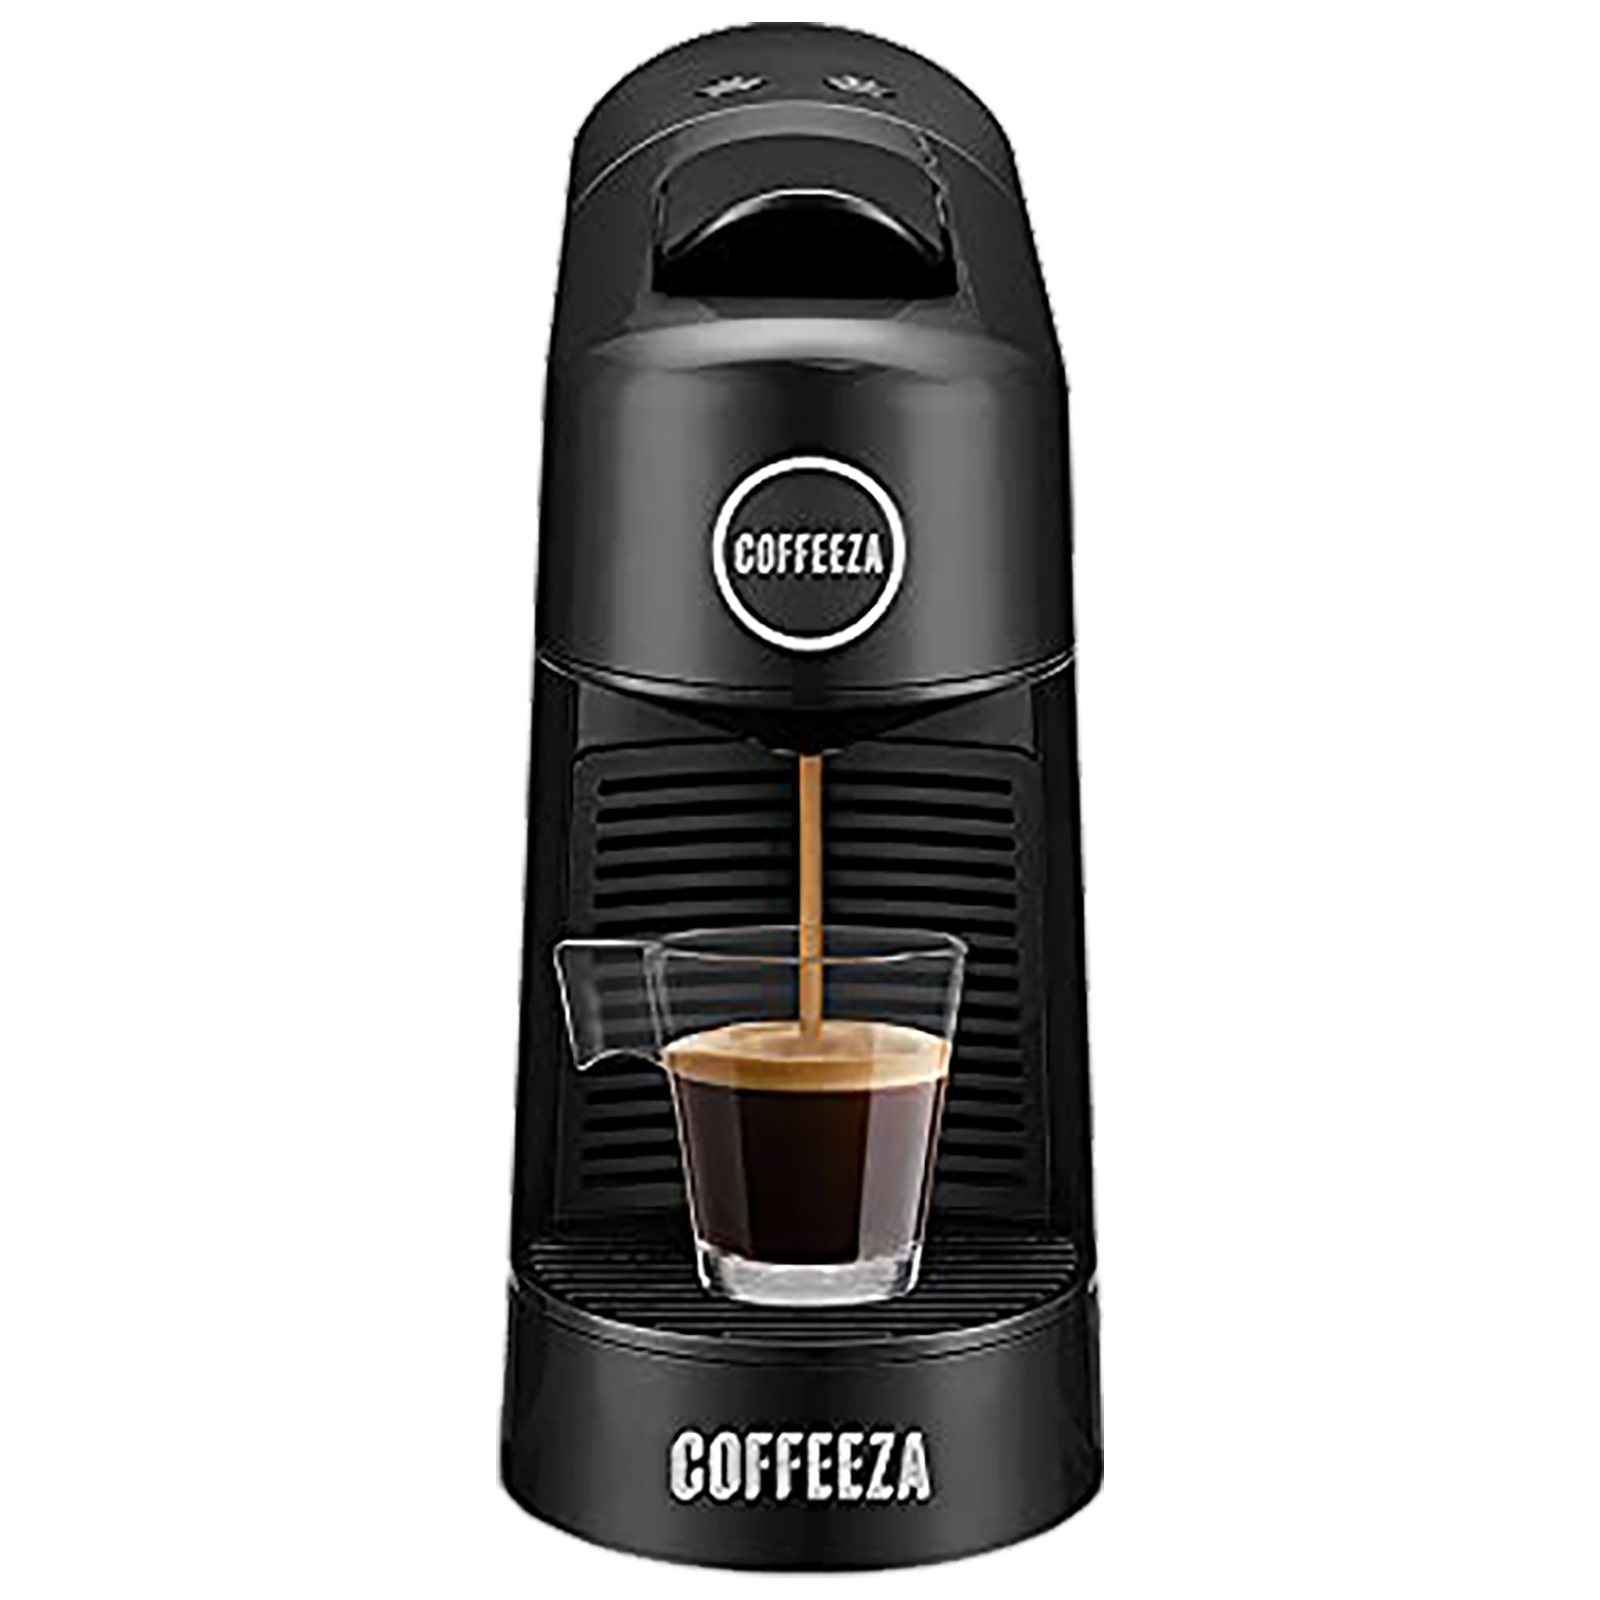 Coffeeza Finero Next Automatic Coffee Maker (Makes Espresso/Lungo & Americano, 60 Capsules Included, CM-FIN2, Black)